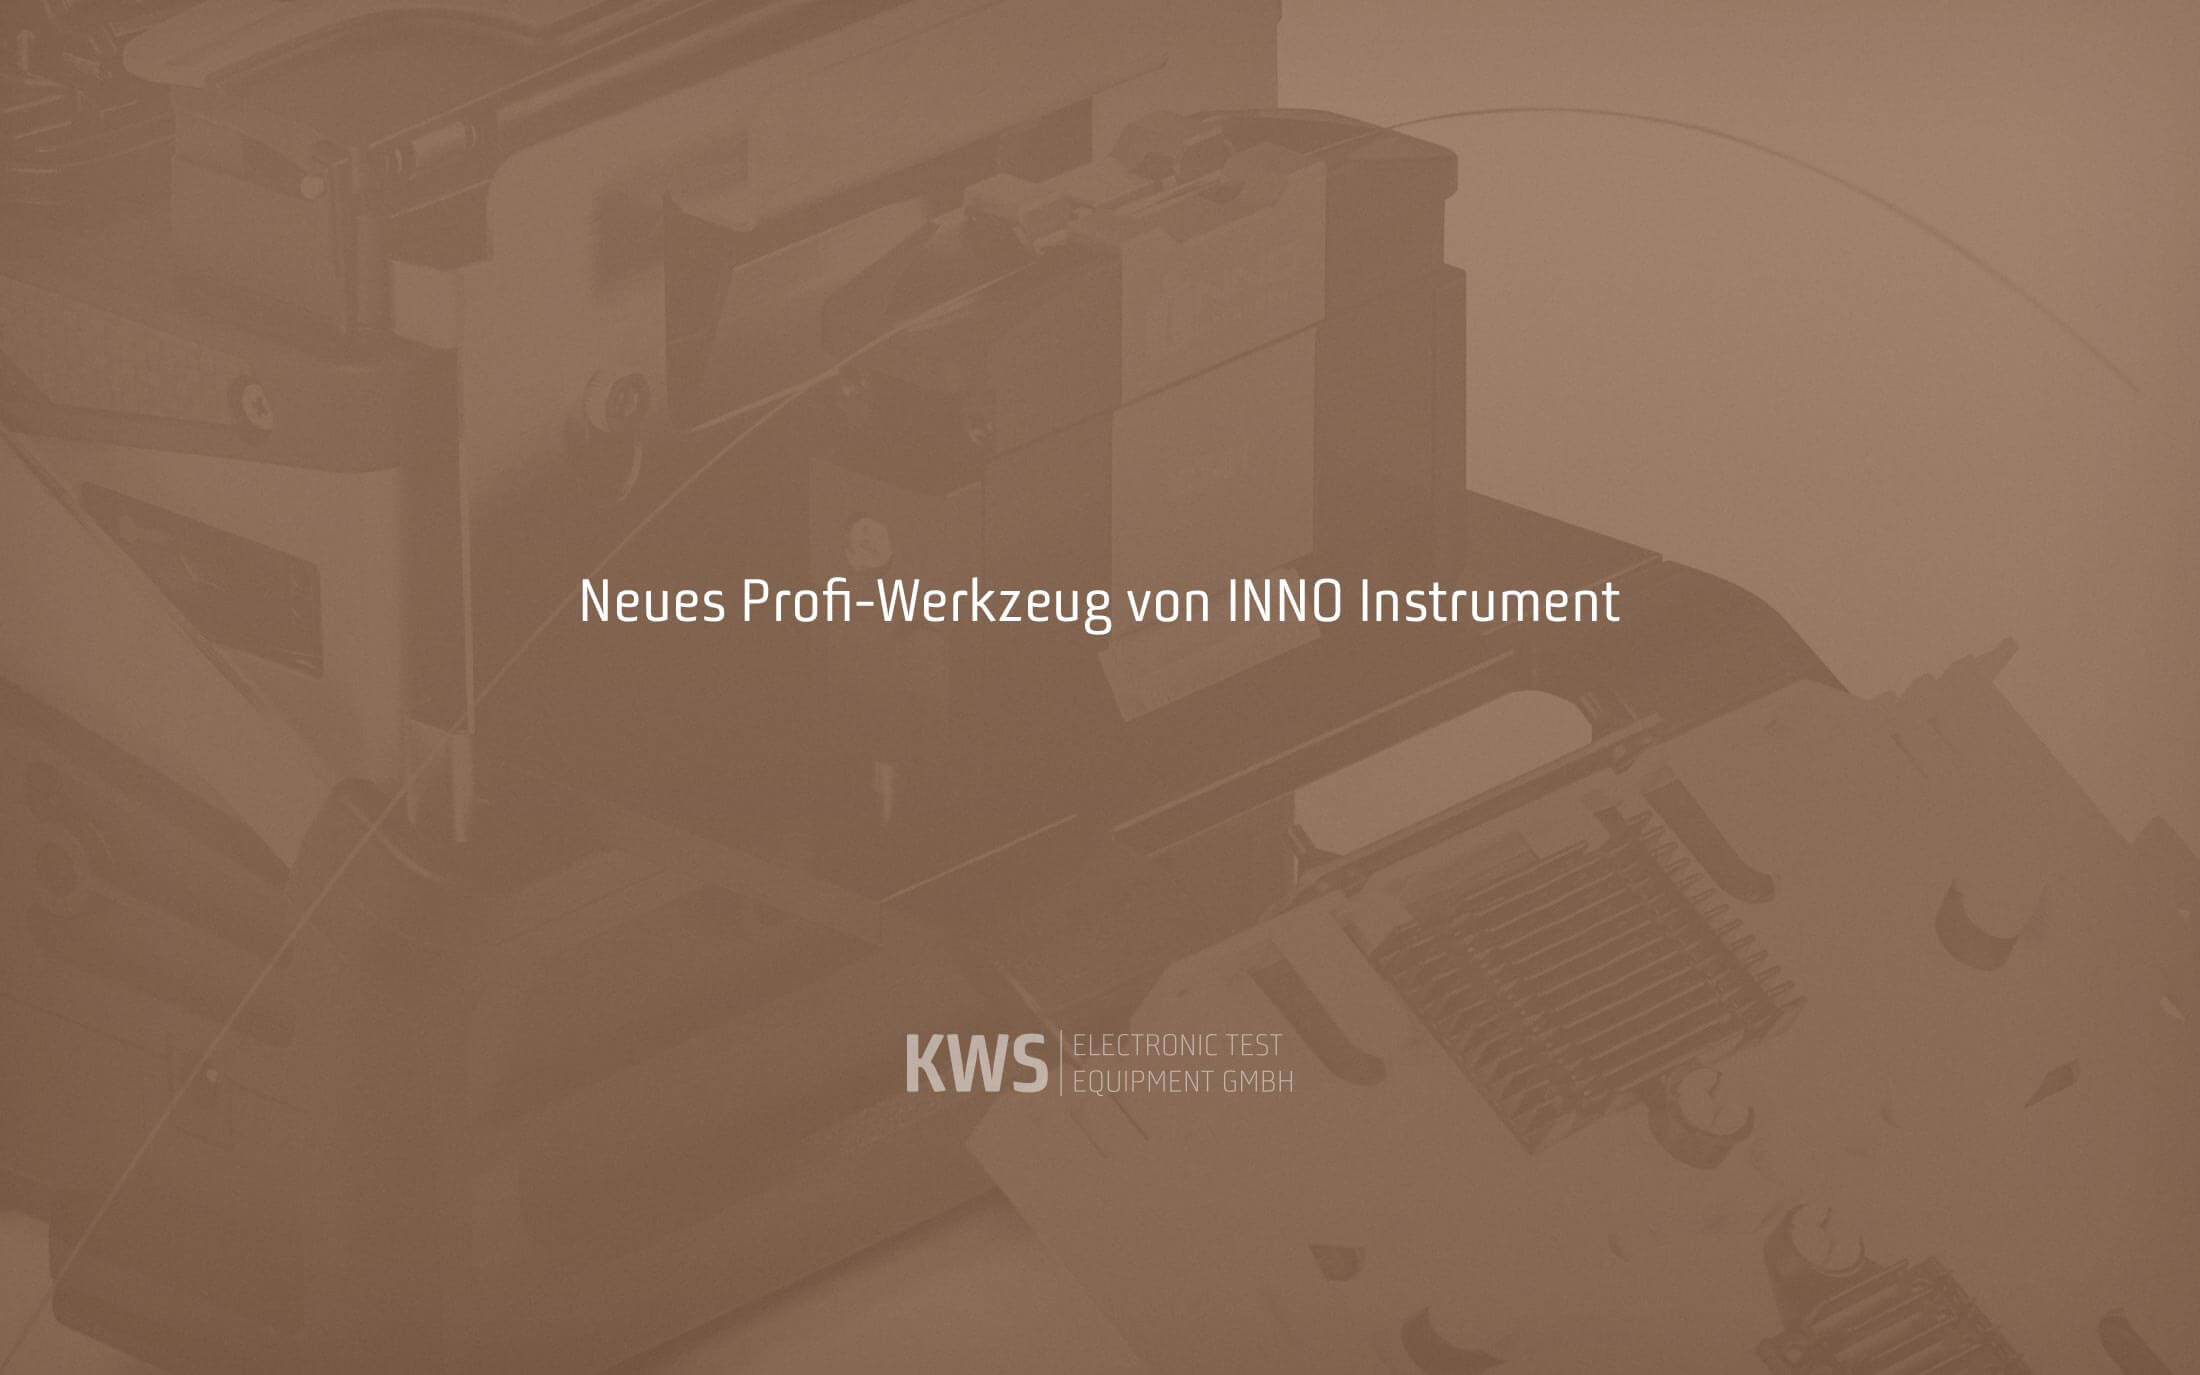 KWS Electronic News 2020: Neue Werkzeuge von Inno Instrument